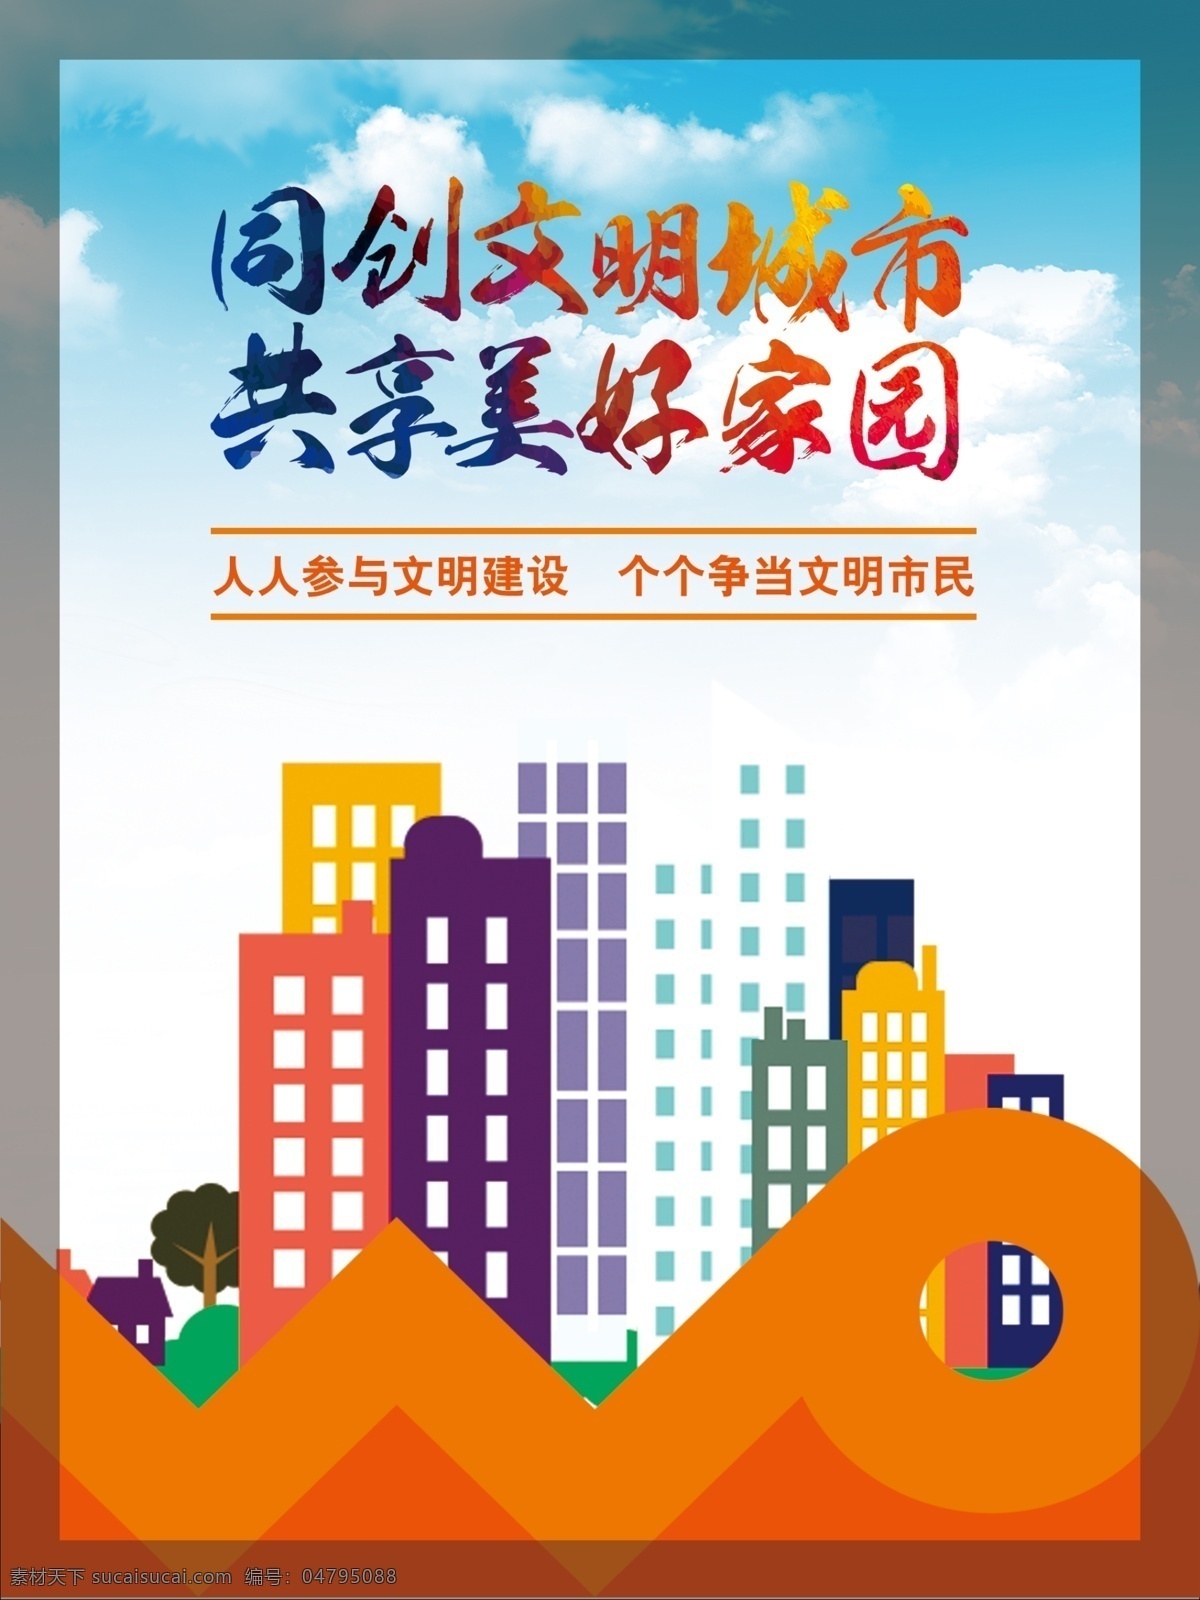 联通 创 城 海报 公益 服务公约 中国联通 创城 核心价值观 文明城市 展板模板